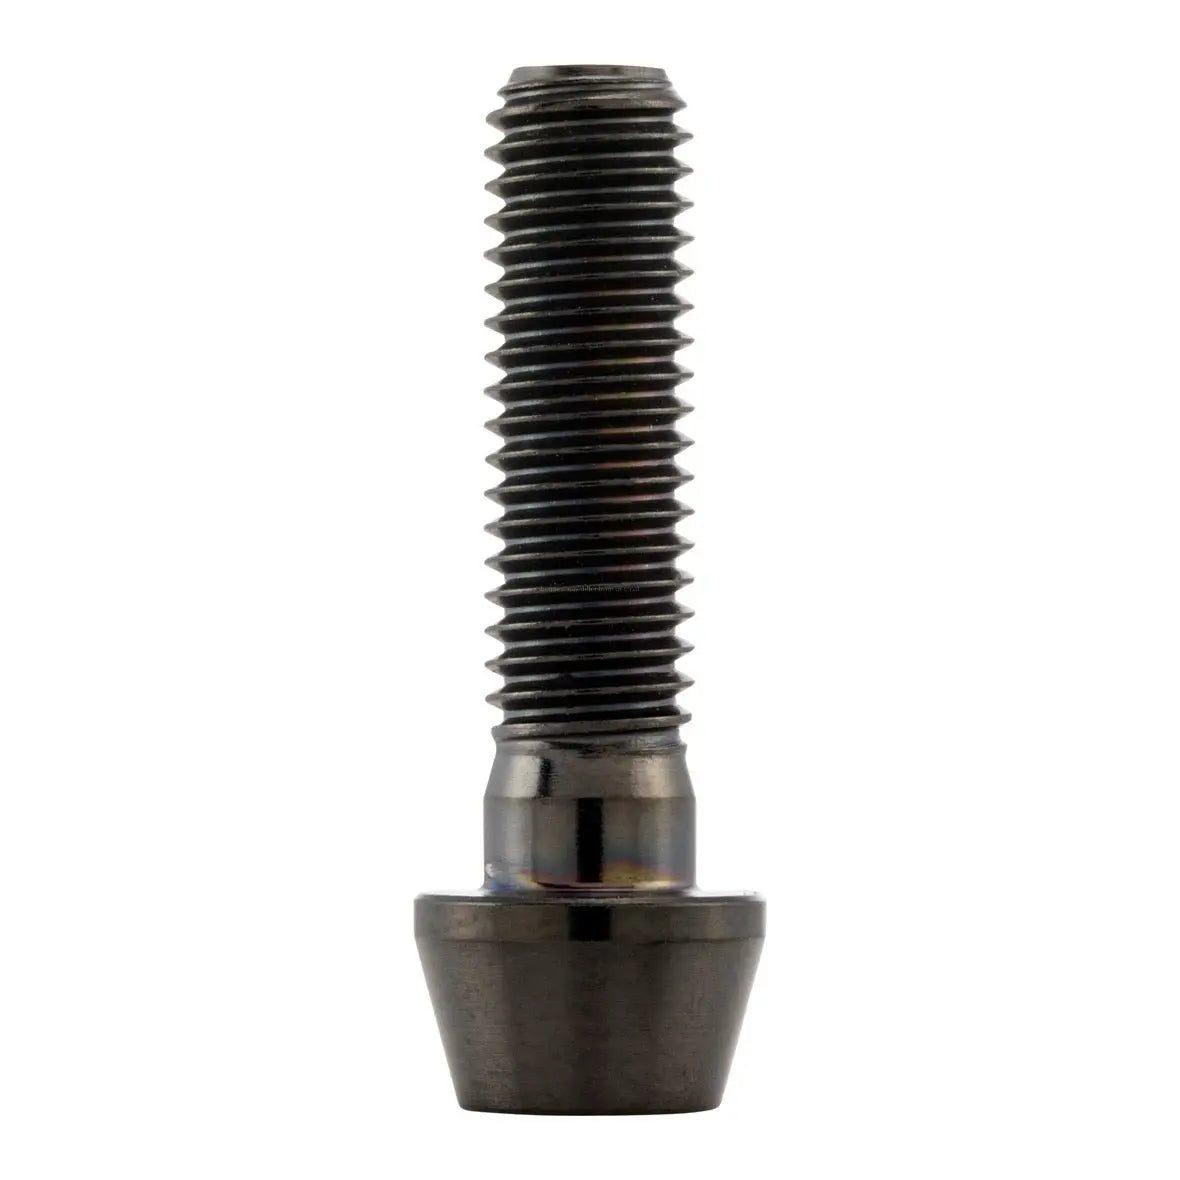 Screw M8x30 mm | inner hexagonal |titanium black | Vespa Models | 5-10 Pack Falan Parts 52.95 Falan Parts